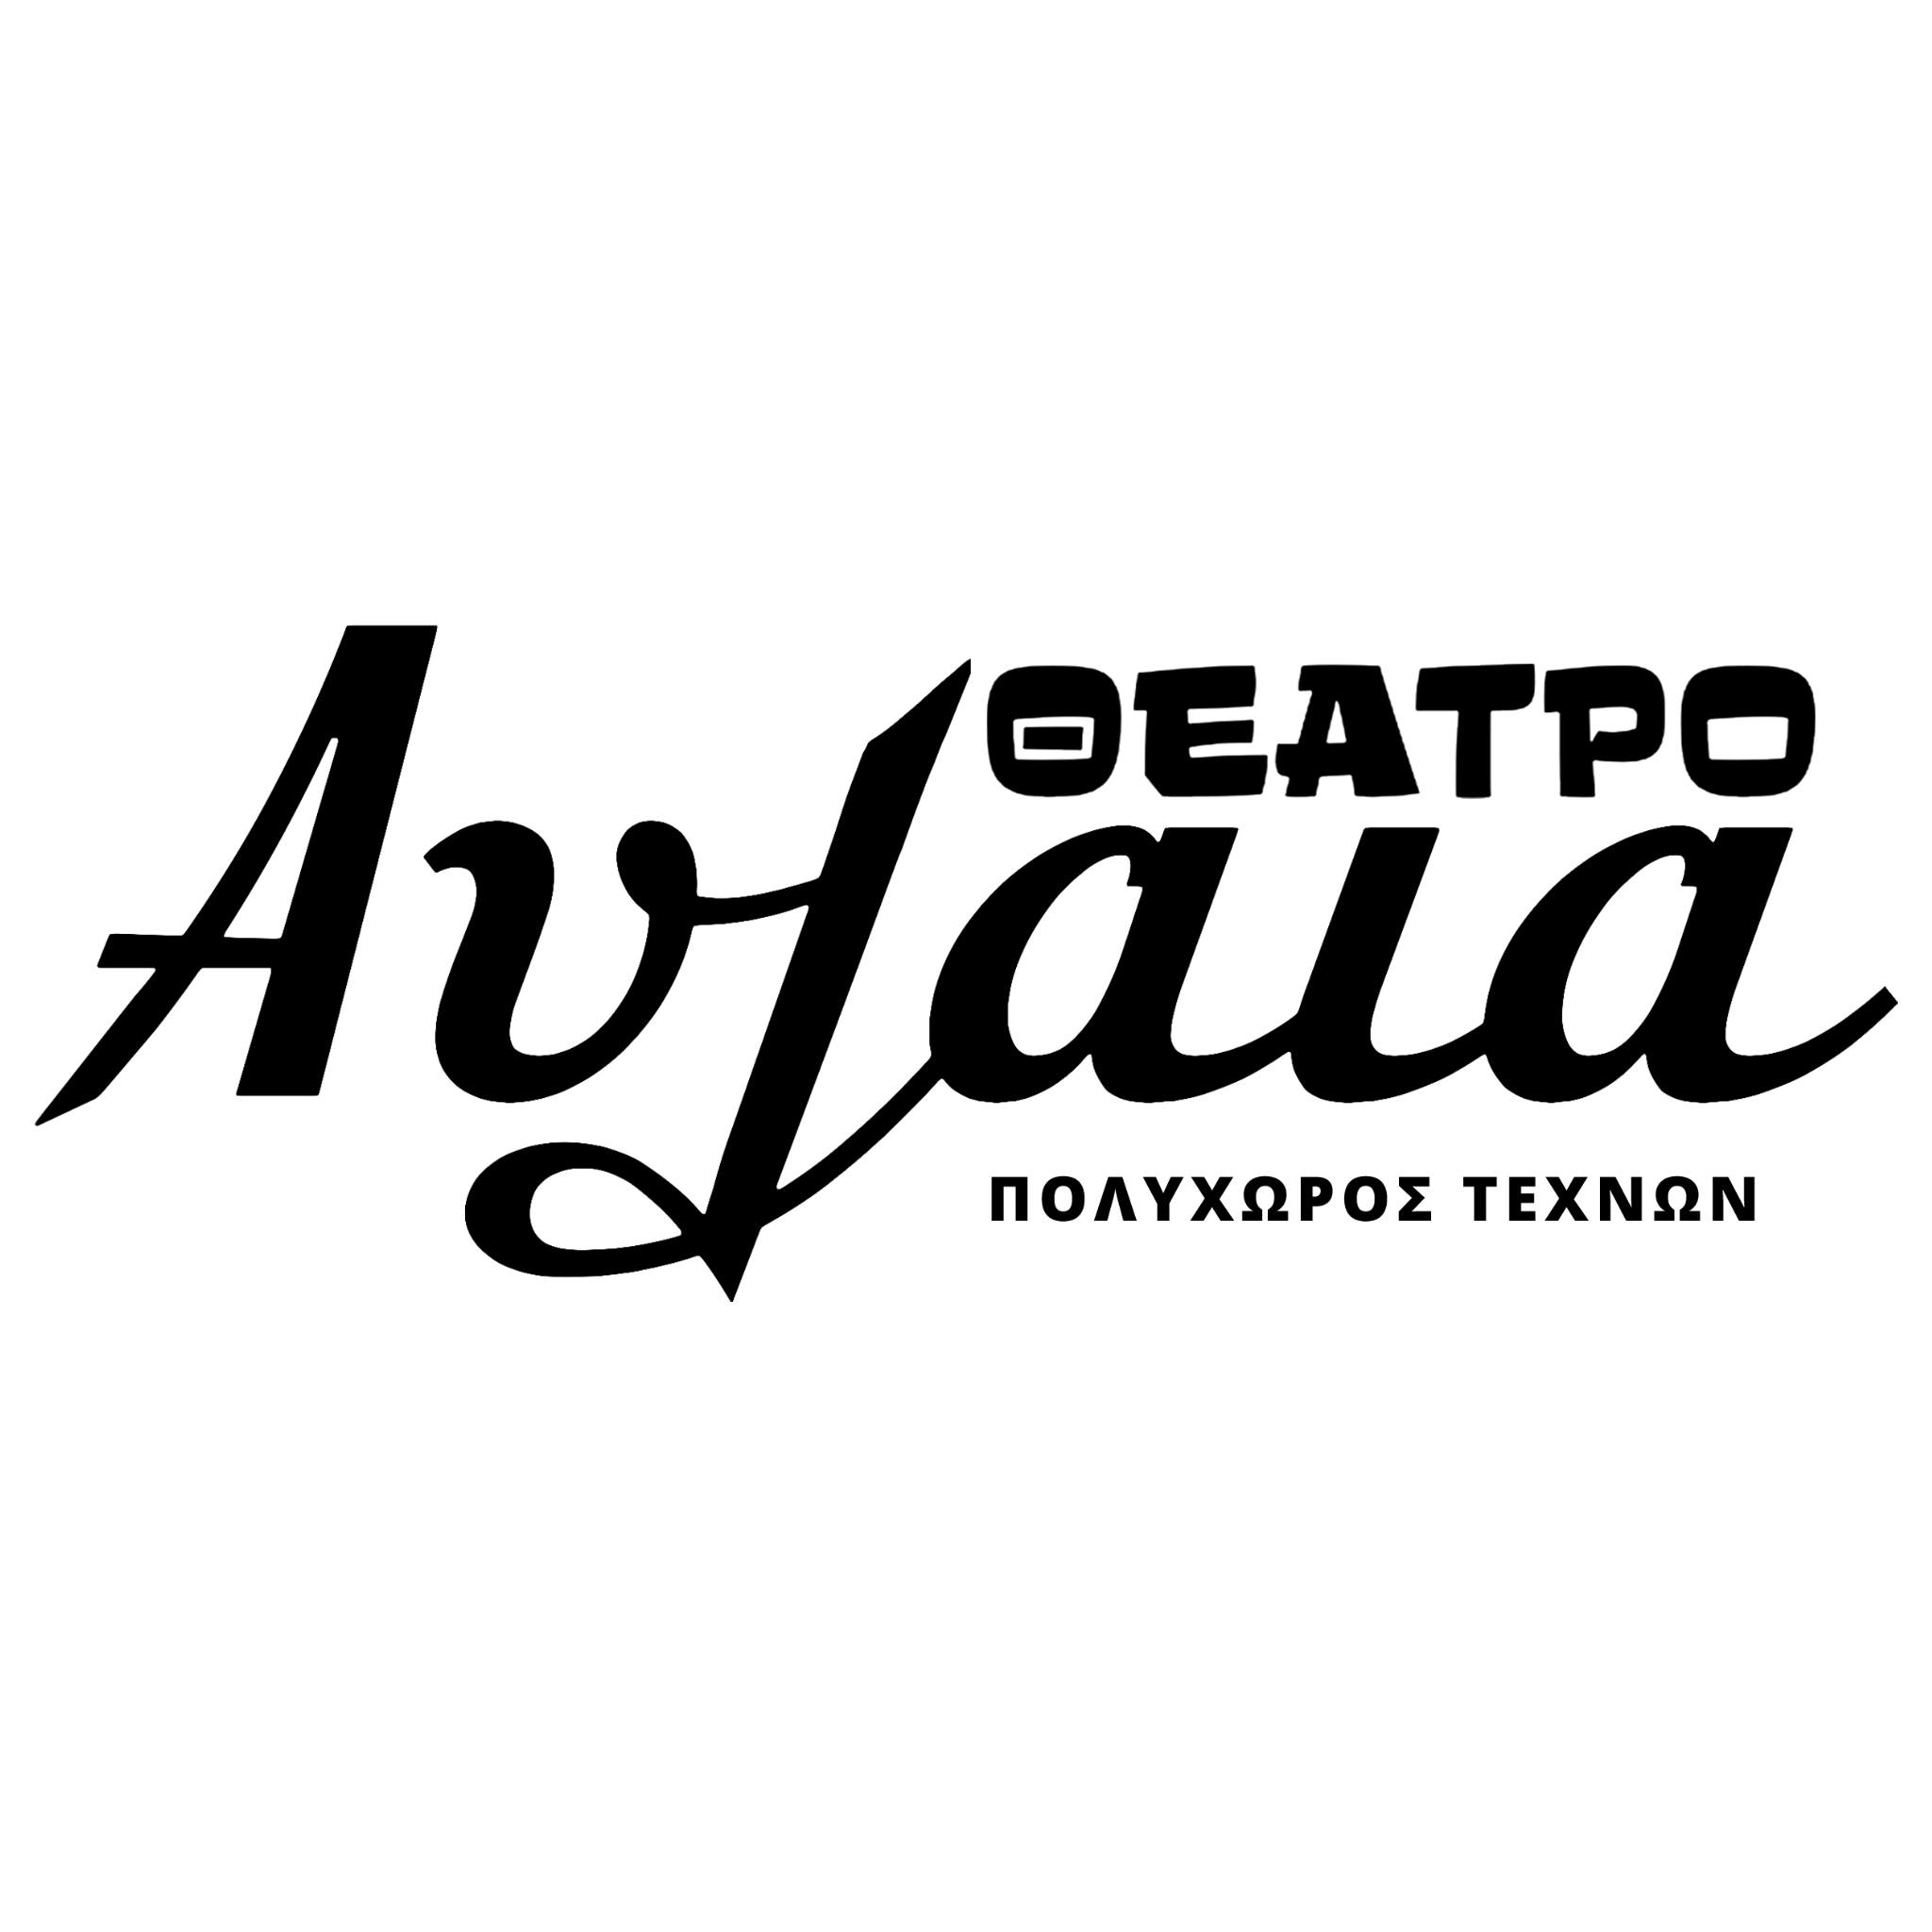 ΘΕΑΤΡΟ ΑΥΛΑΙΑ - ΠΟΛΥΧΩΡΟΣ ΤΕΧΝΩΝ logo